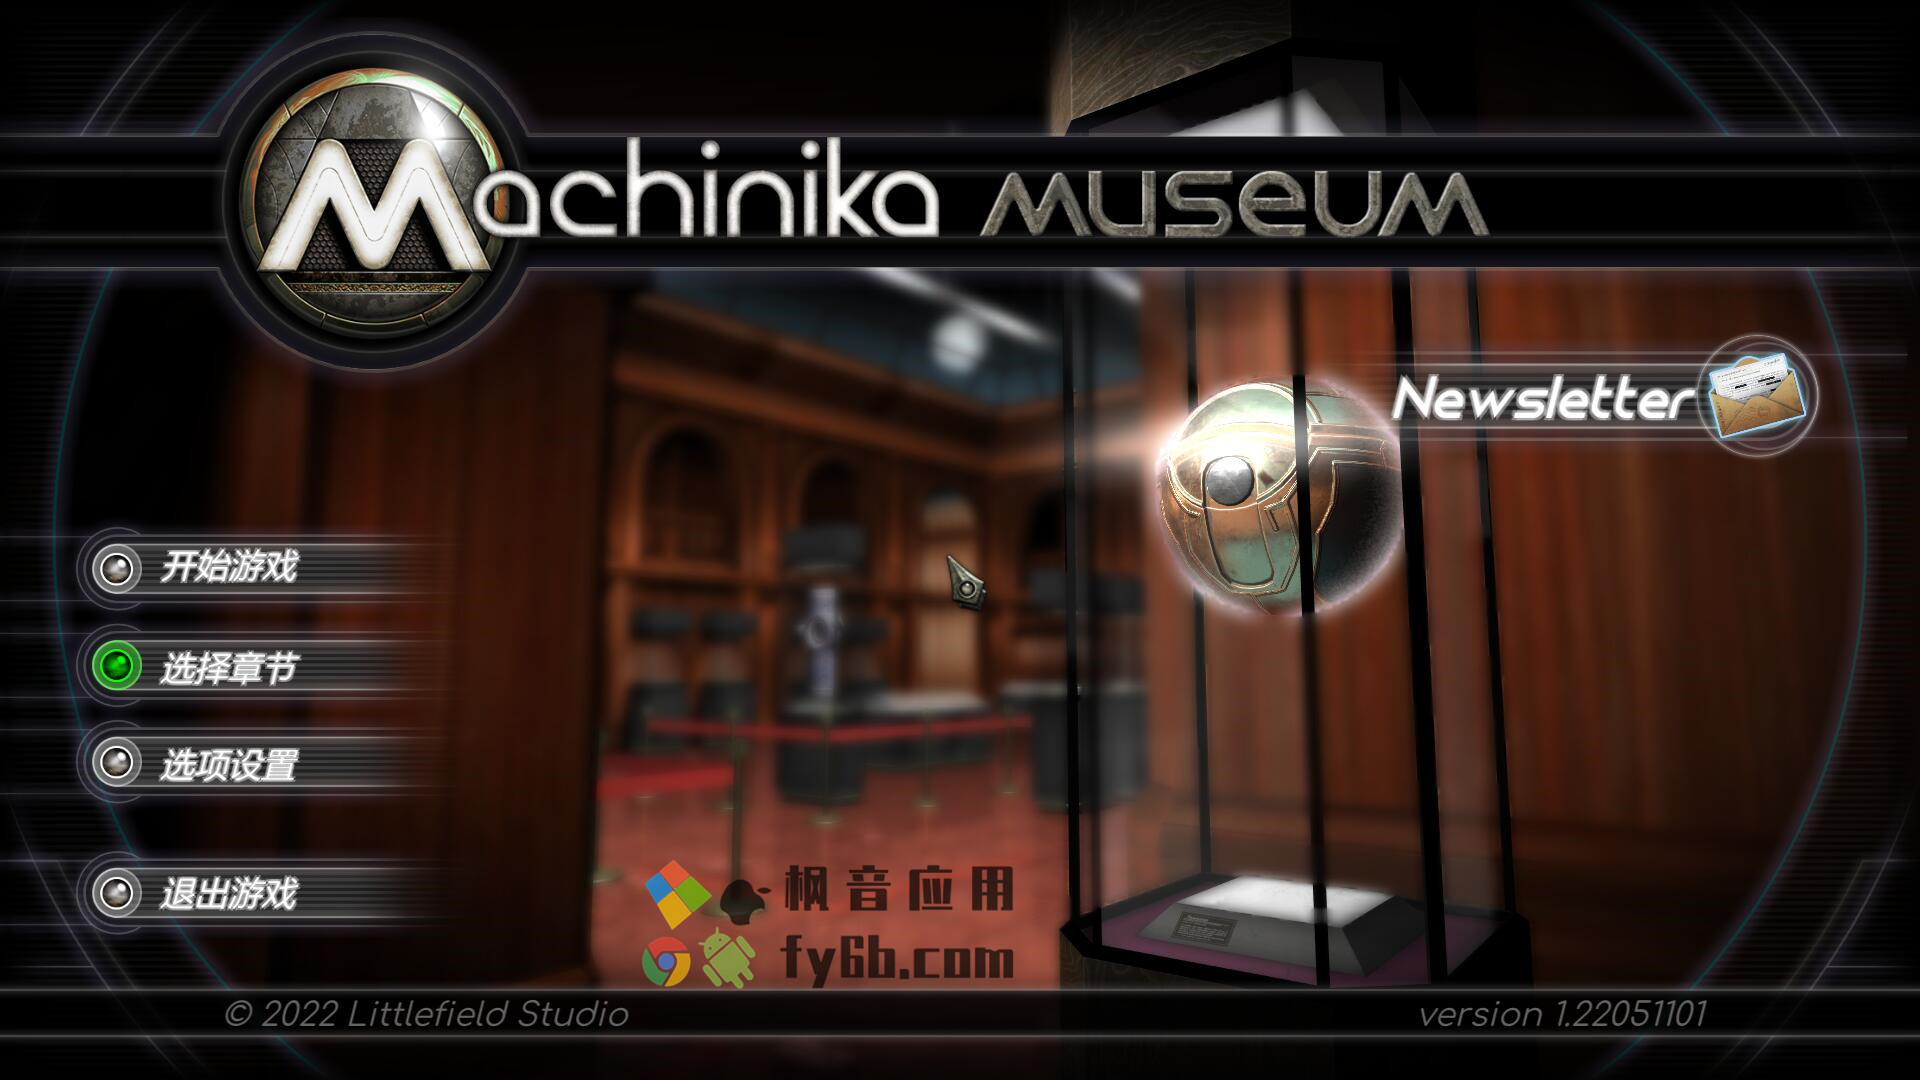 Windows Machinika Museum 异星装置博物馆